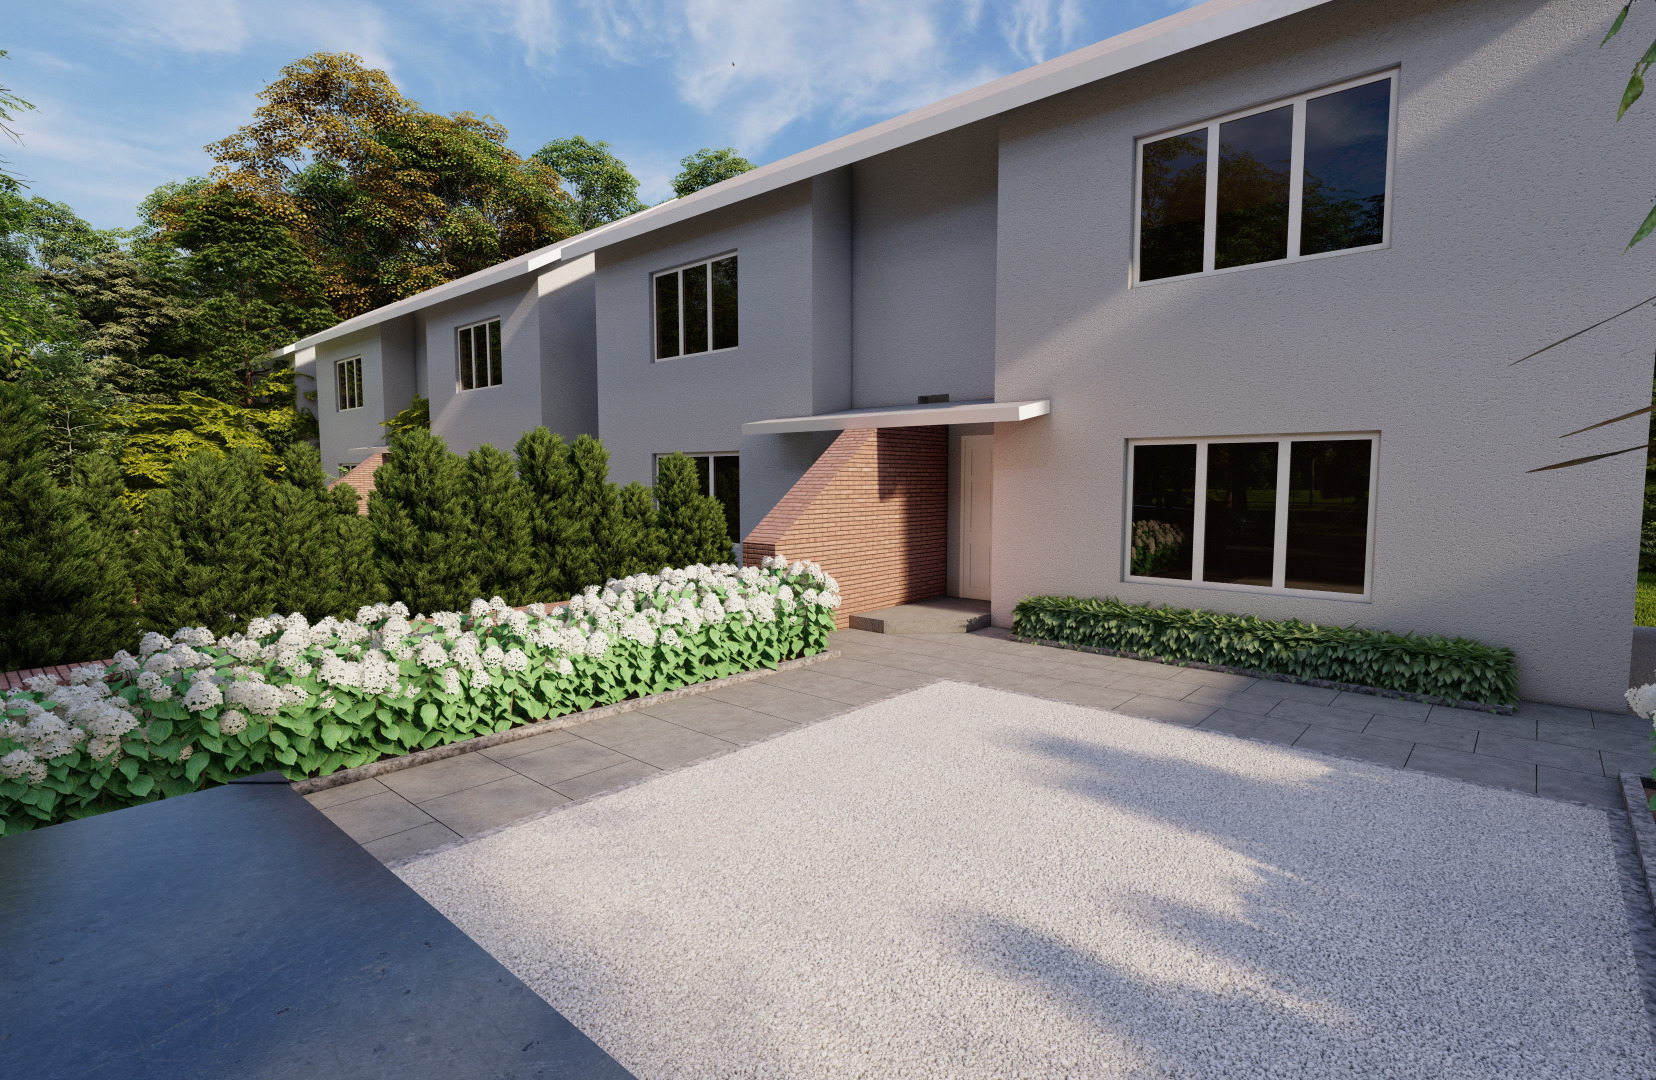 Front Garden Driveway Design | Rathfarnham, Dublin 14  | Owen Chubb Garden Design Services, Tel 087-2306128